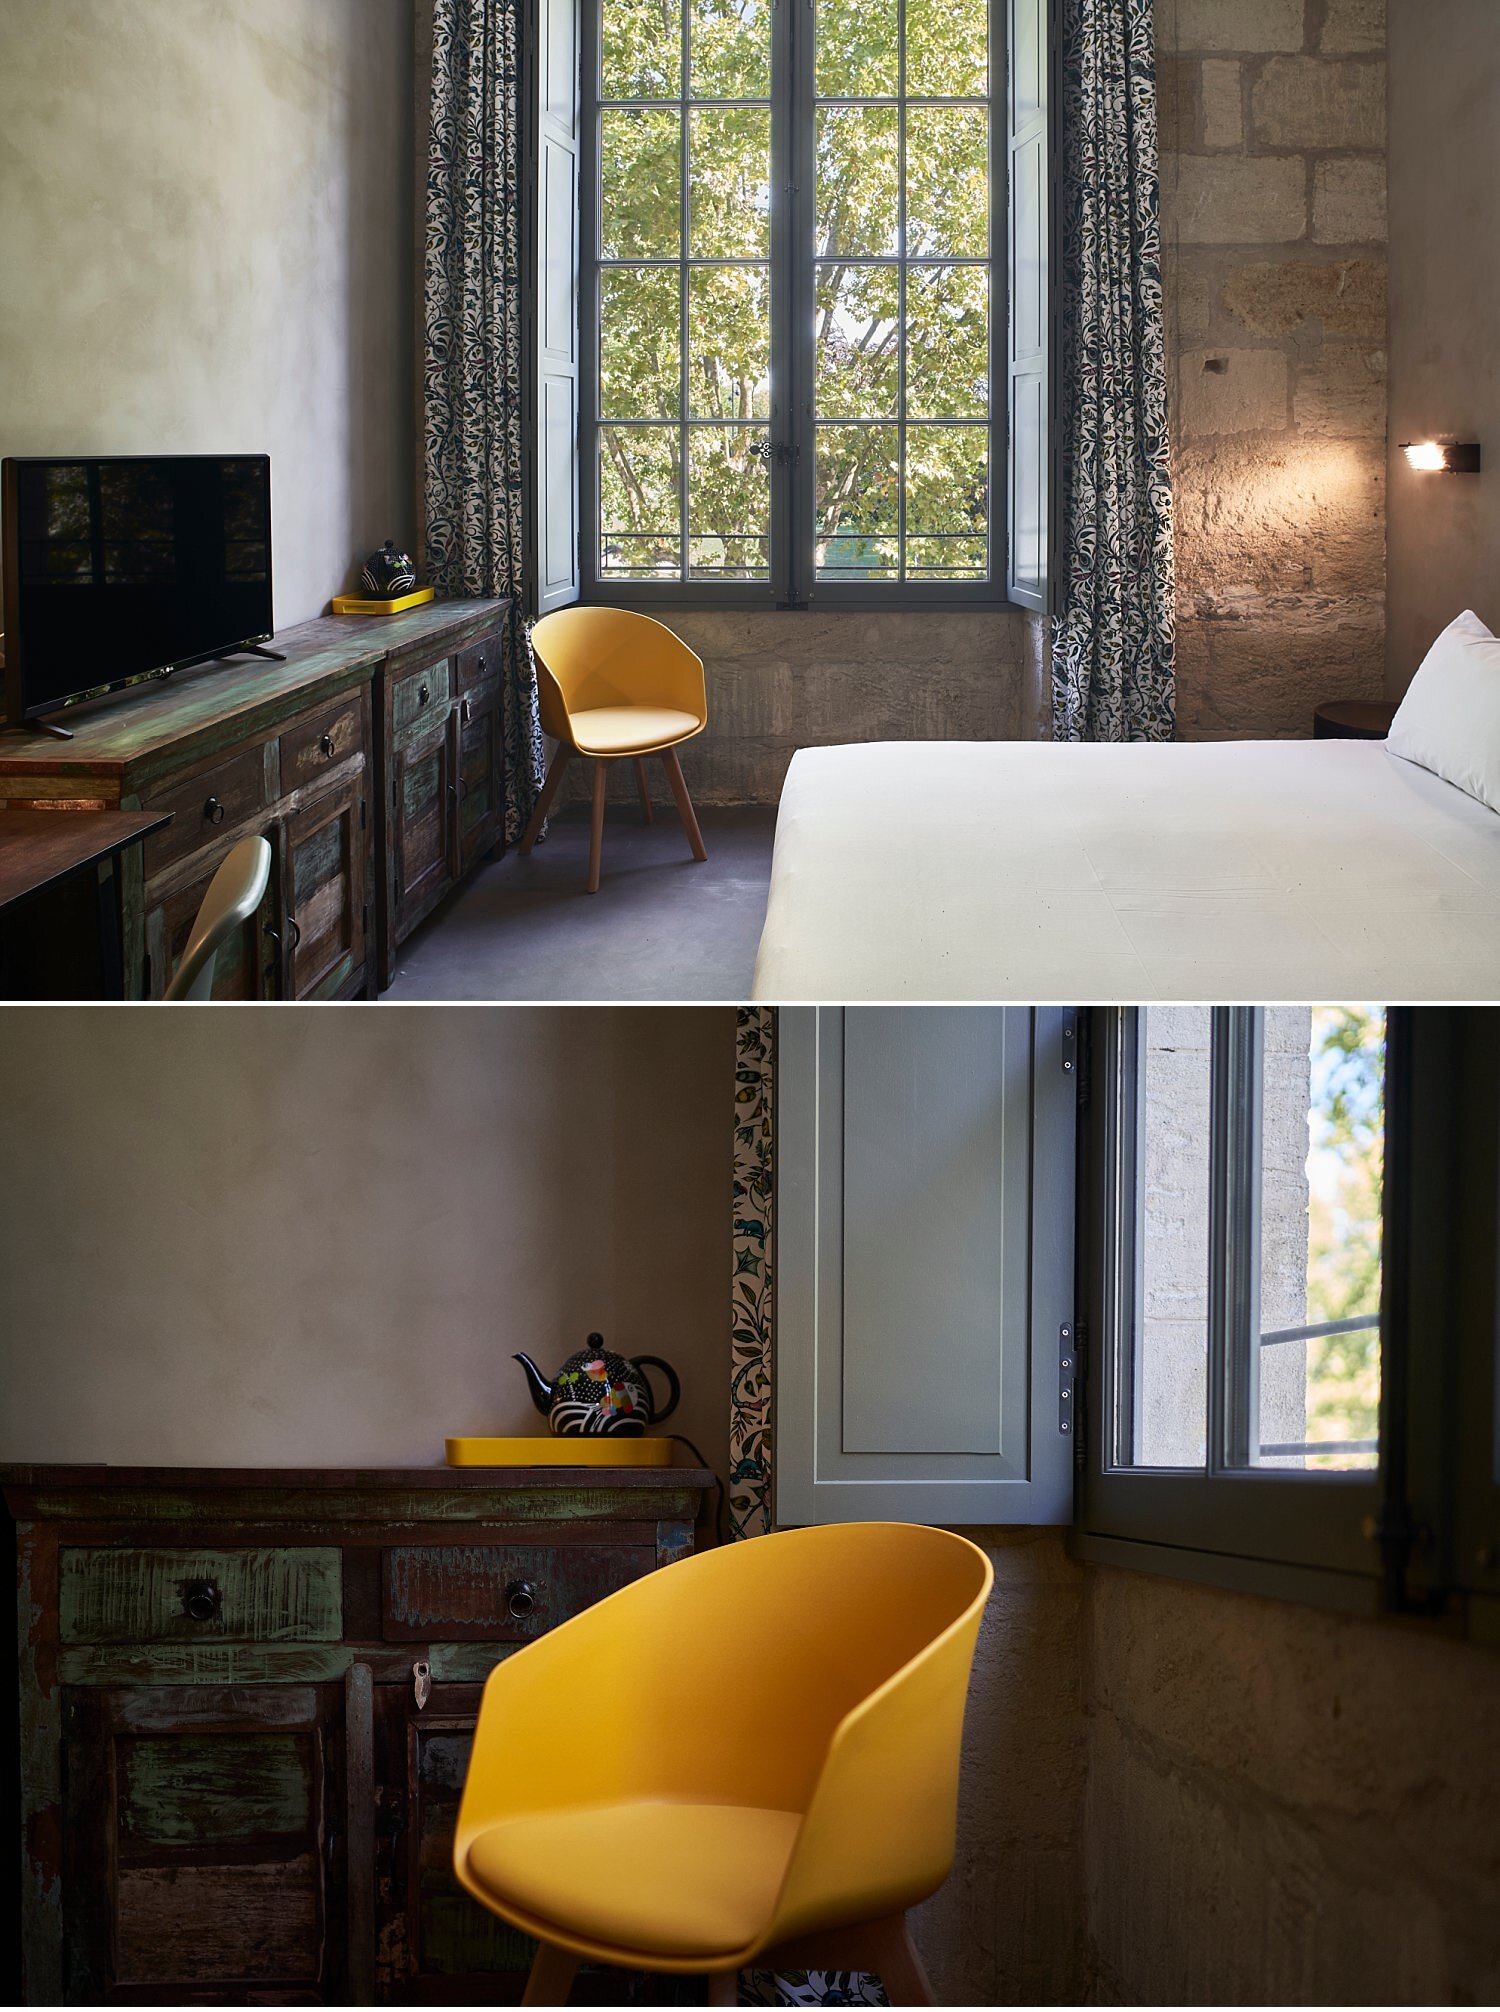  Nuovo hotel a Bordeaux, La Zoologie, di proprietà francese come il Palazzetto Rosso a Siena ed altri alberghi a Parigi. L'ispirazione della struttura è legata alla originale origine dello stabile che era un padiglione di zoologia dell'università. Ap